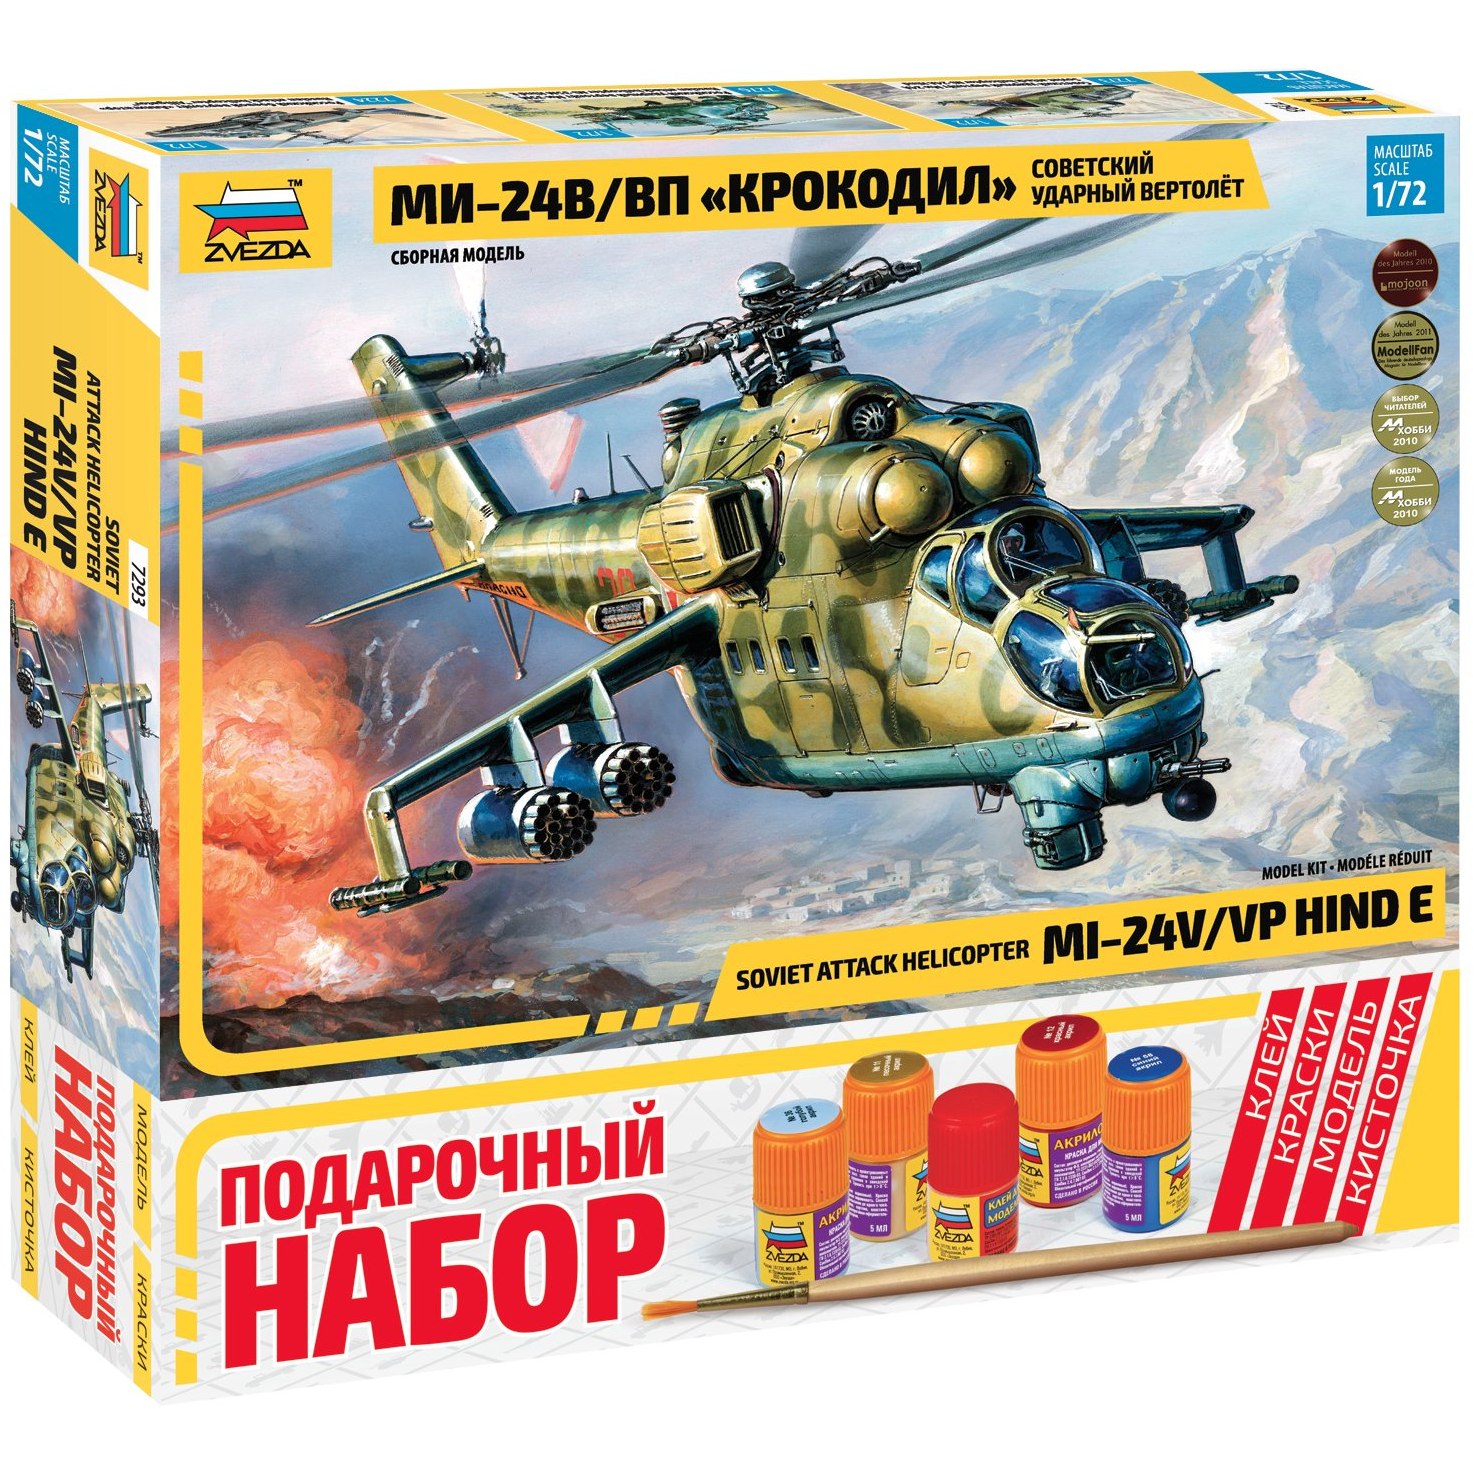 Сов. вертолет ми-24 в/вп "крокодил"